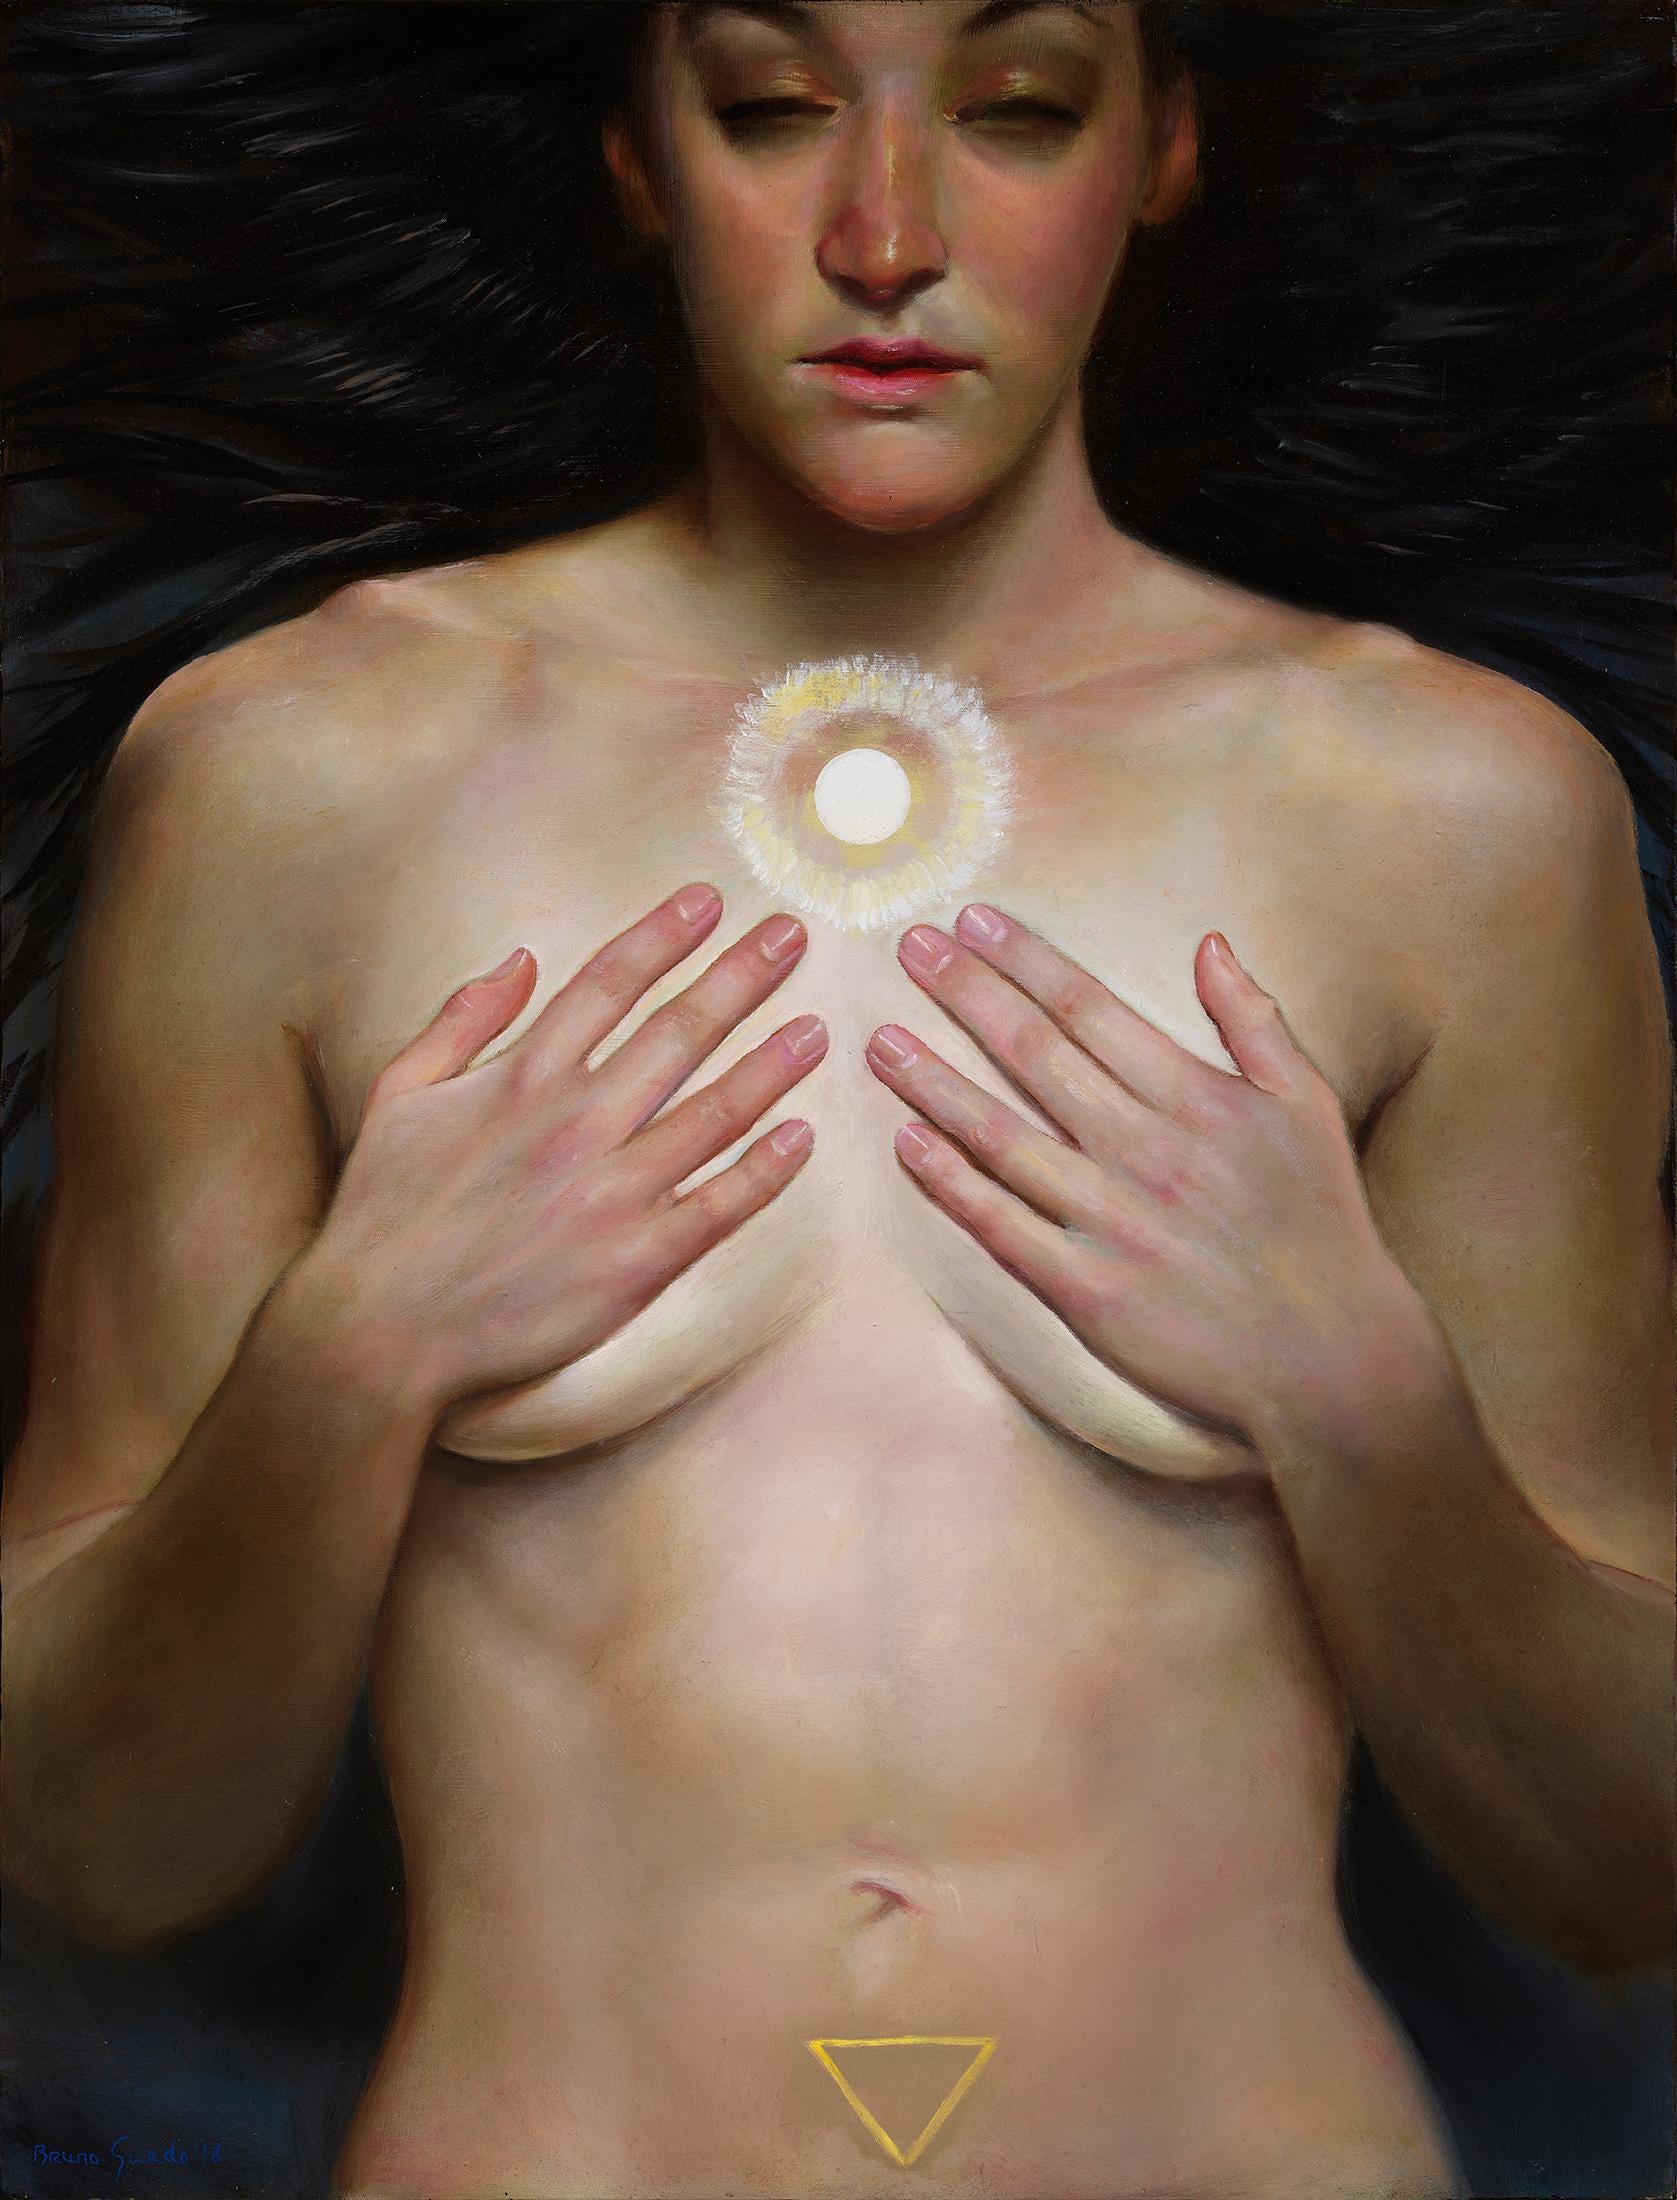 The Oracle, nackte Frau mit den Händen, die ihre Brüste bedecken, langes dunkles Haar